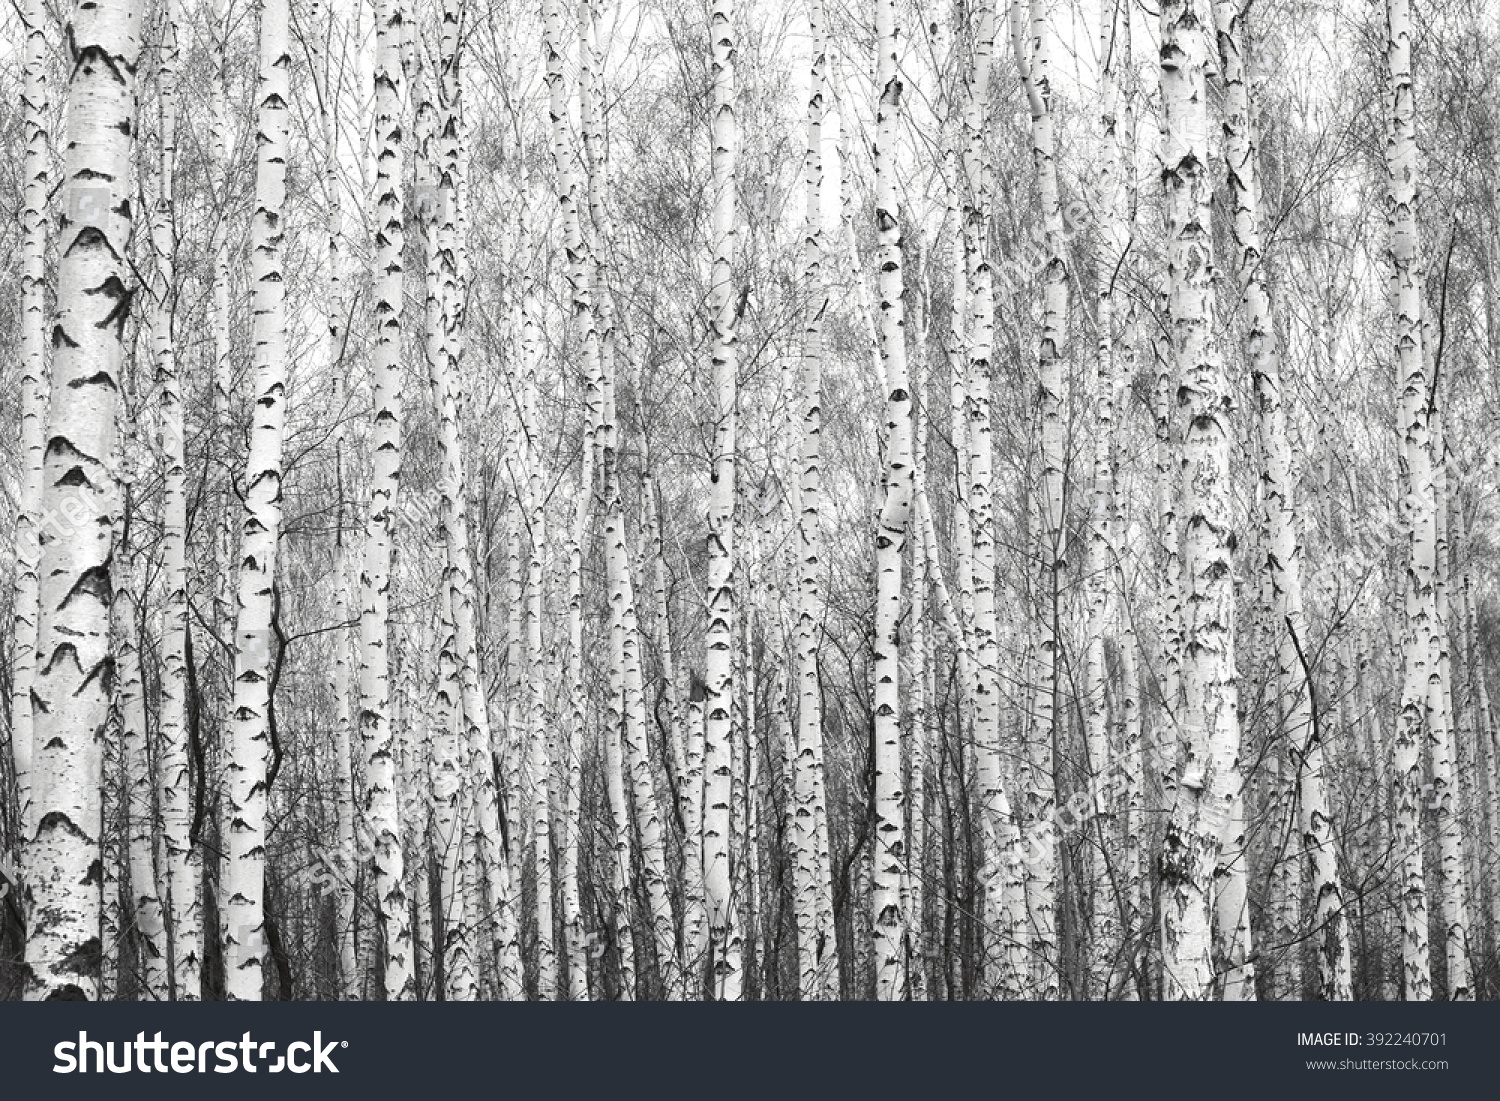 black and white birch forest, black-white photo with black and white birch trees with black and white birch bark #392240701